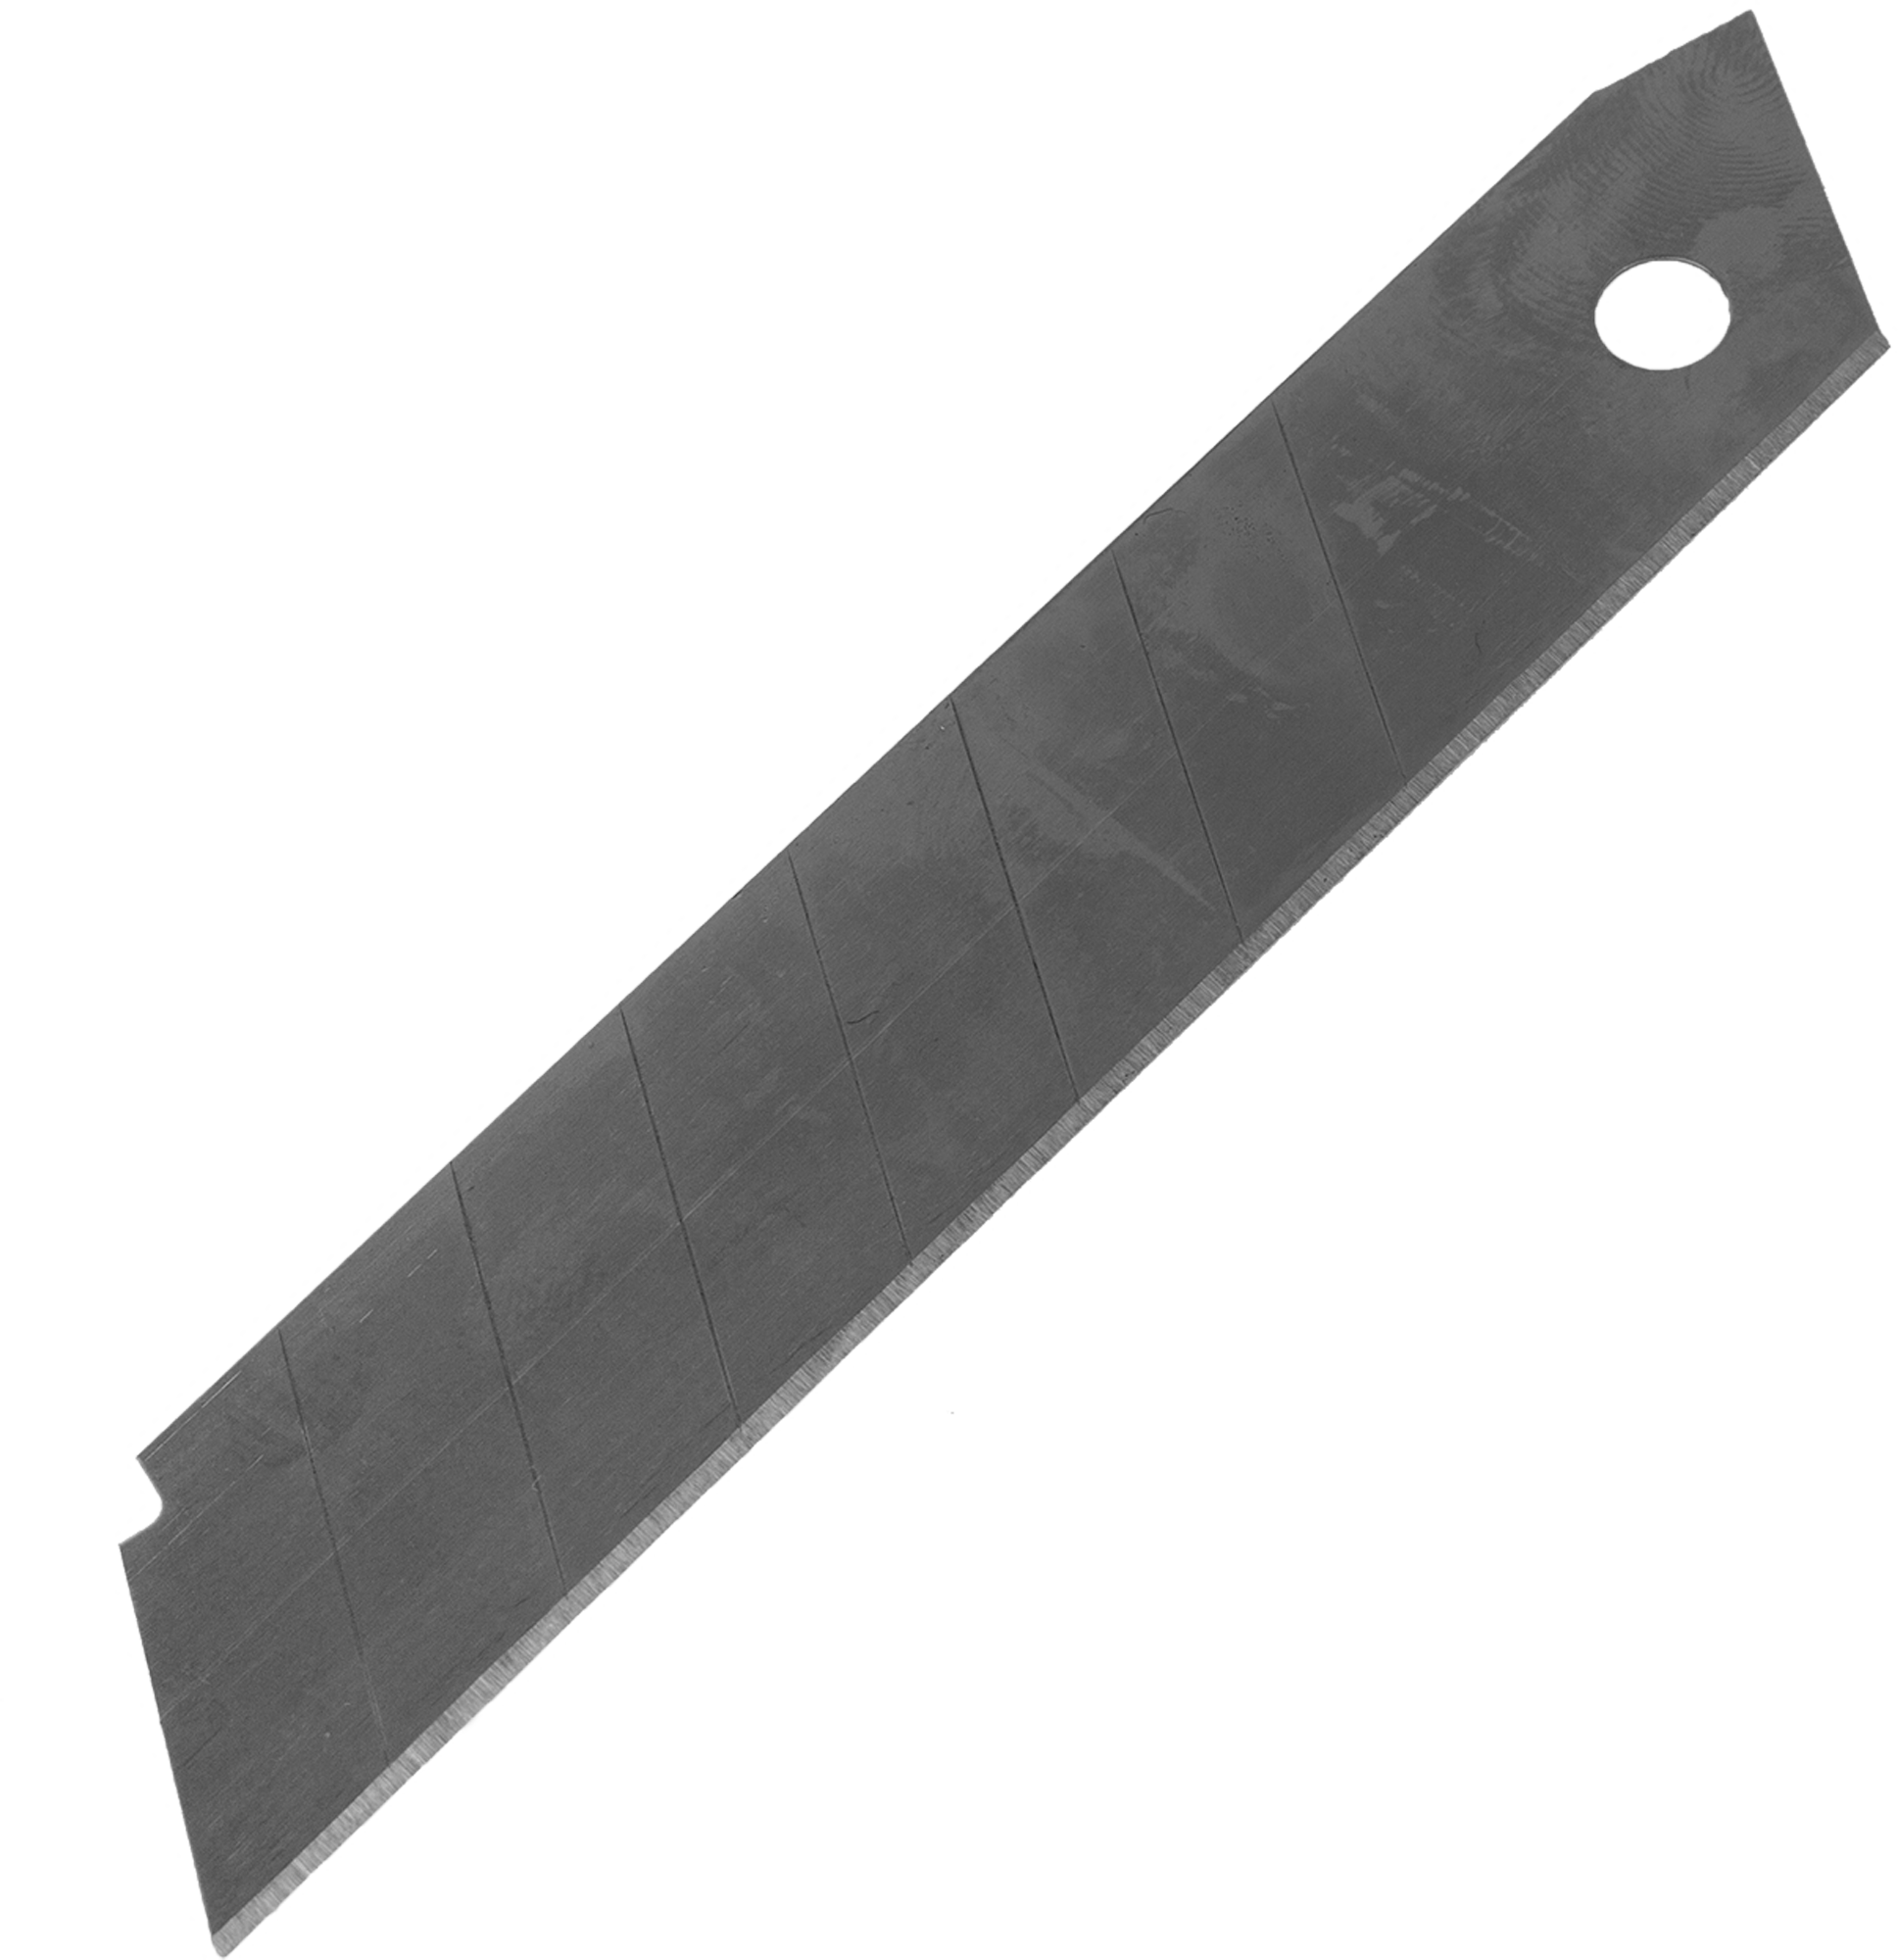 Лезвие для ножа 18мм, 10шт Sparta. Лезвия для ножа Systec 18 мм, 10 шт. Лезвие Sparta 18 мм. Лезвия для ножа 18 мм Sparta. Купить нож леруа